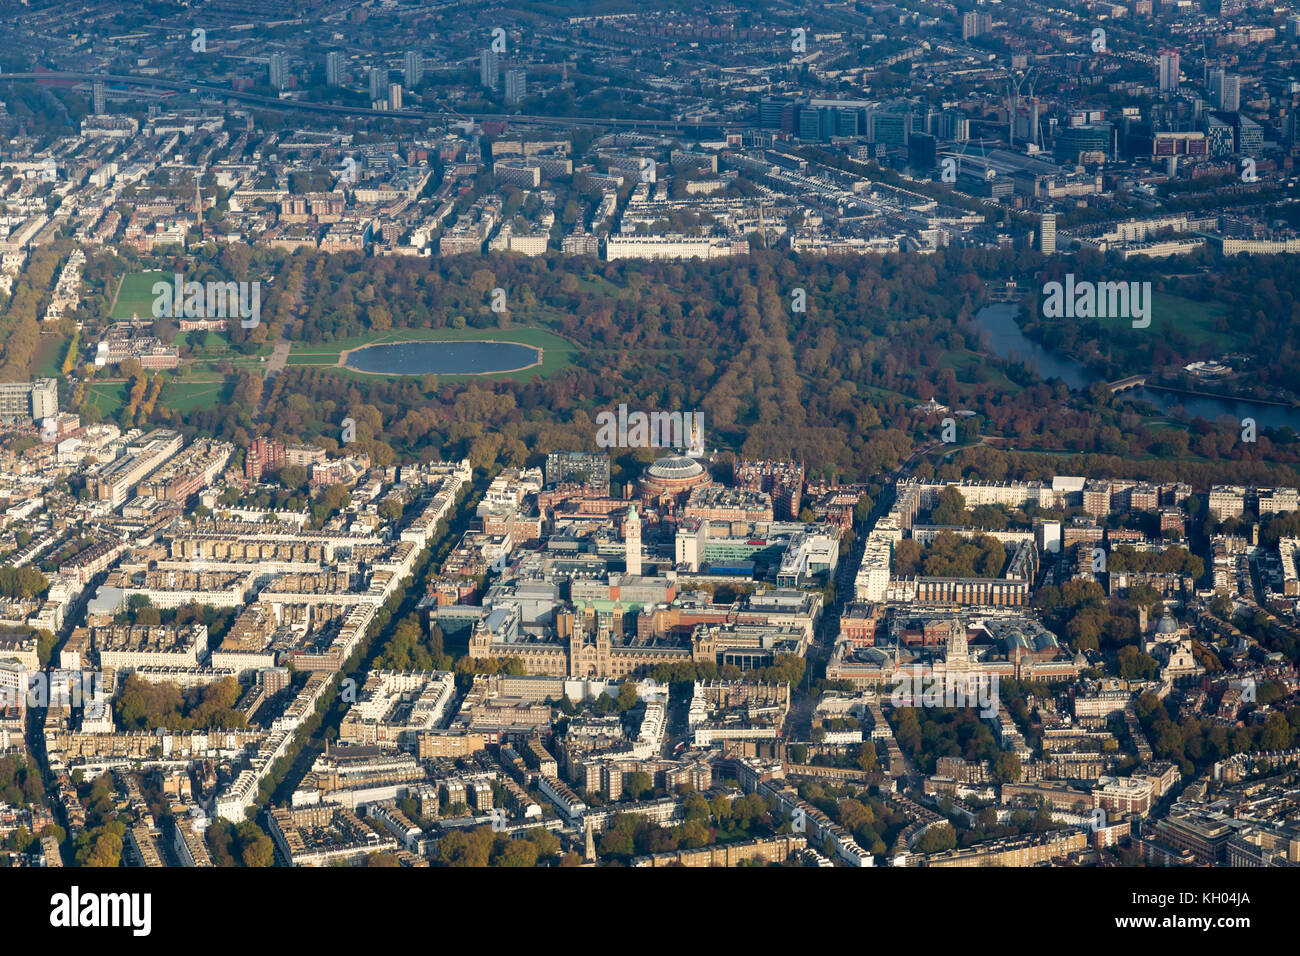 Vue aérienne de Hyde Park, le palais de Kensington et Knightsbridge, Londres du sud. Banque D'Images